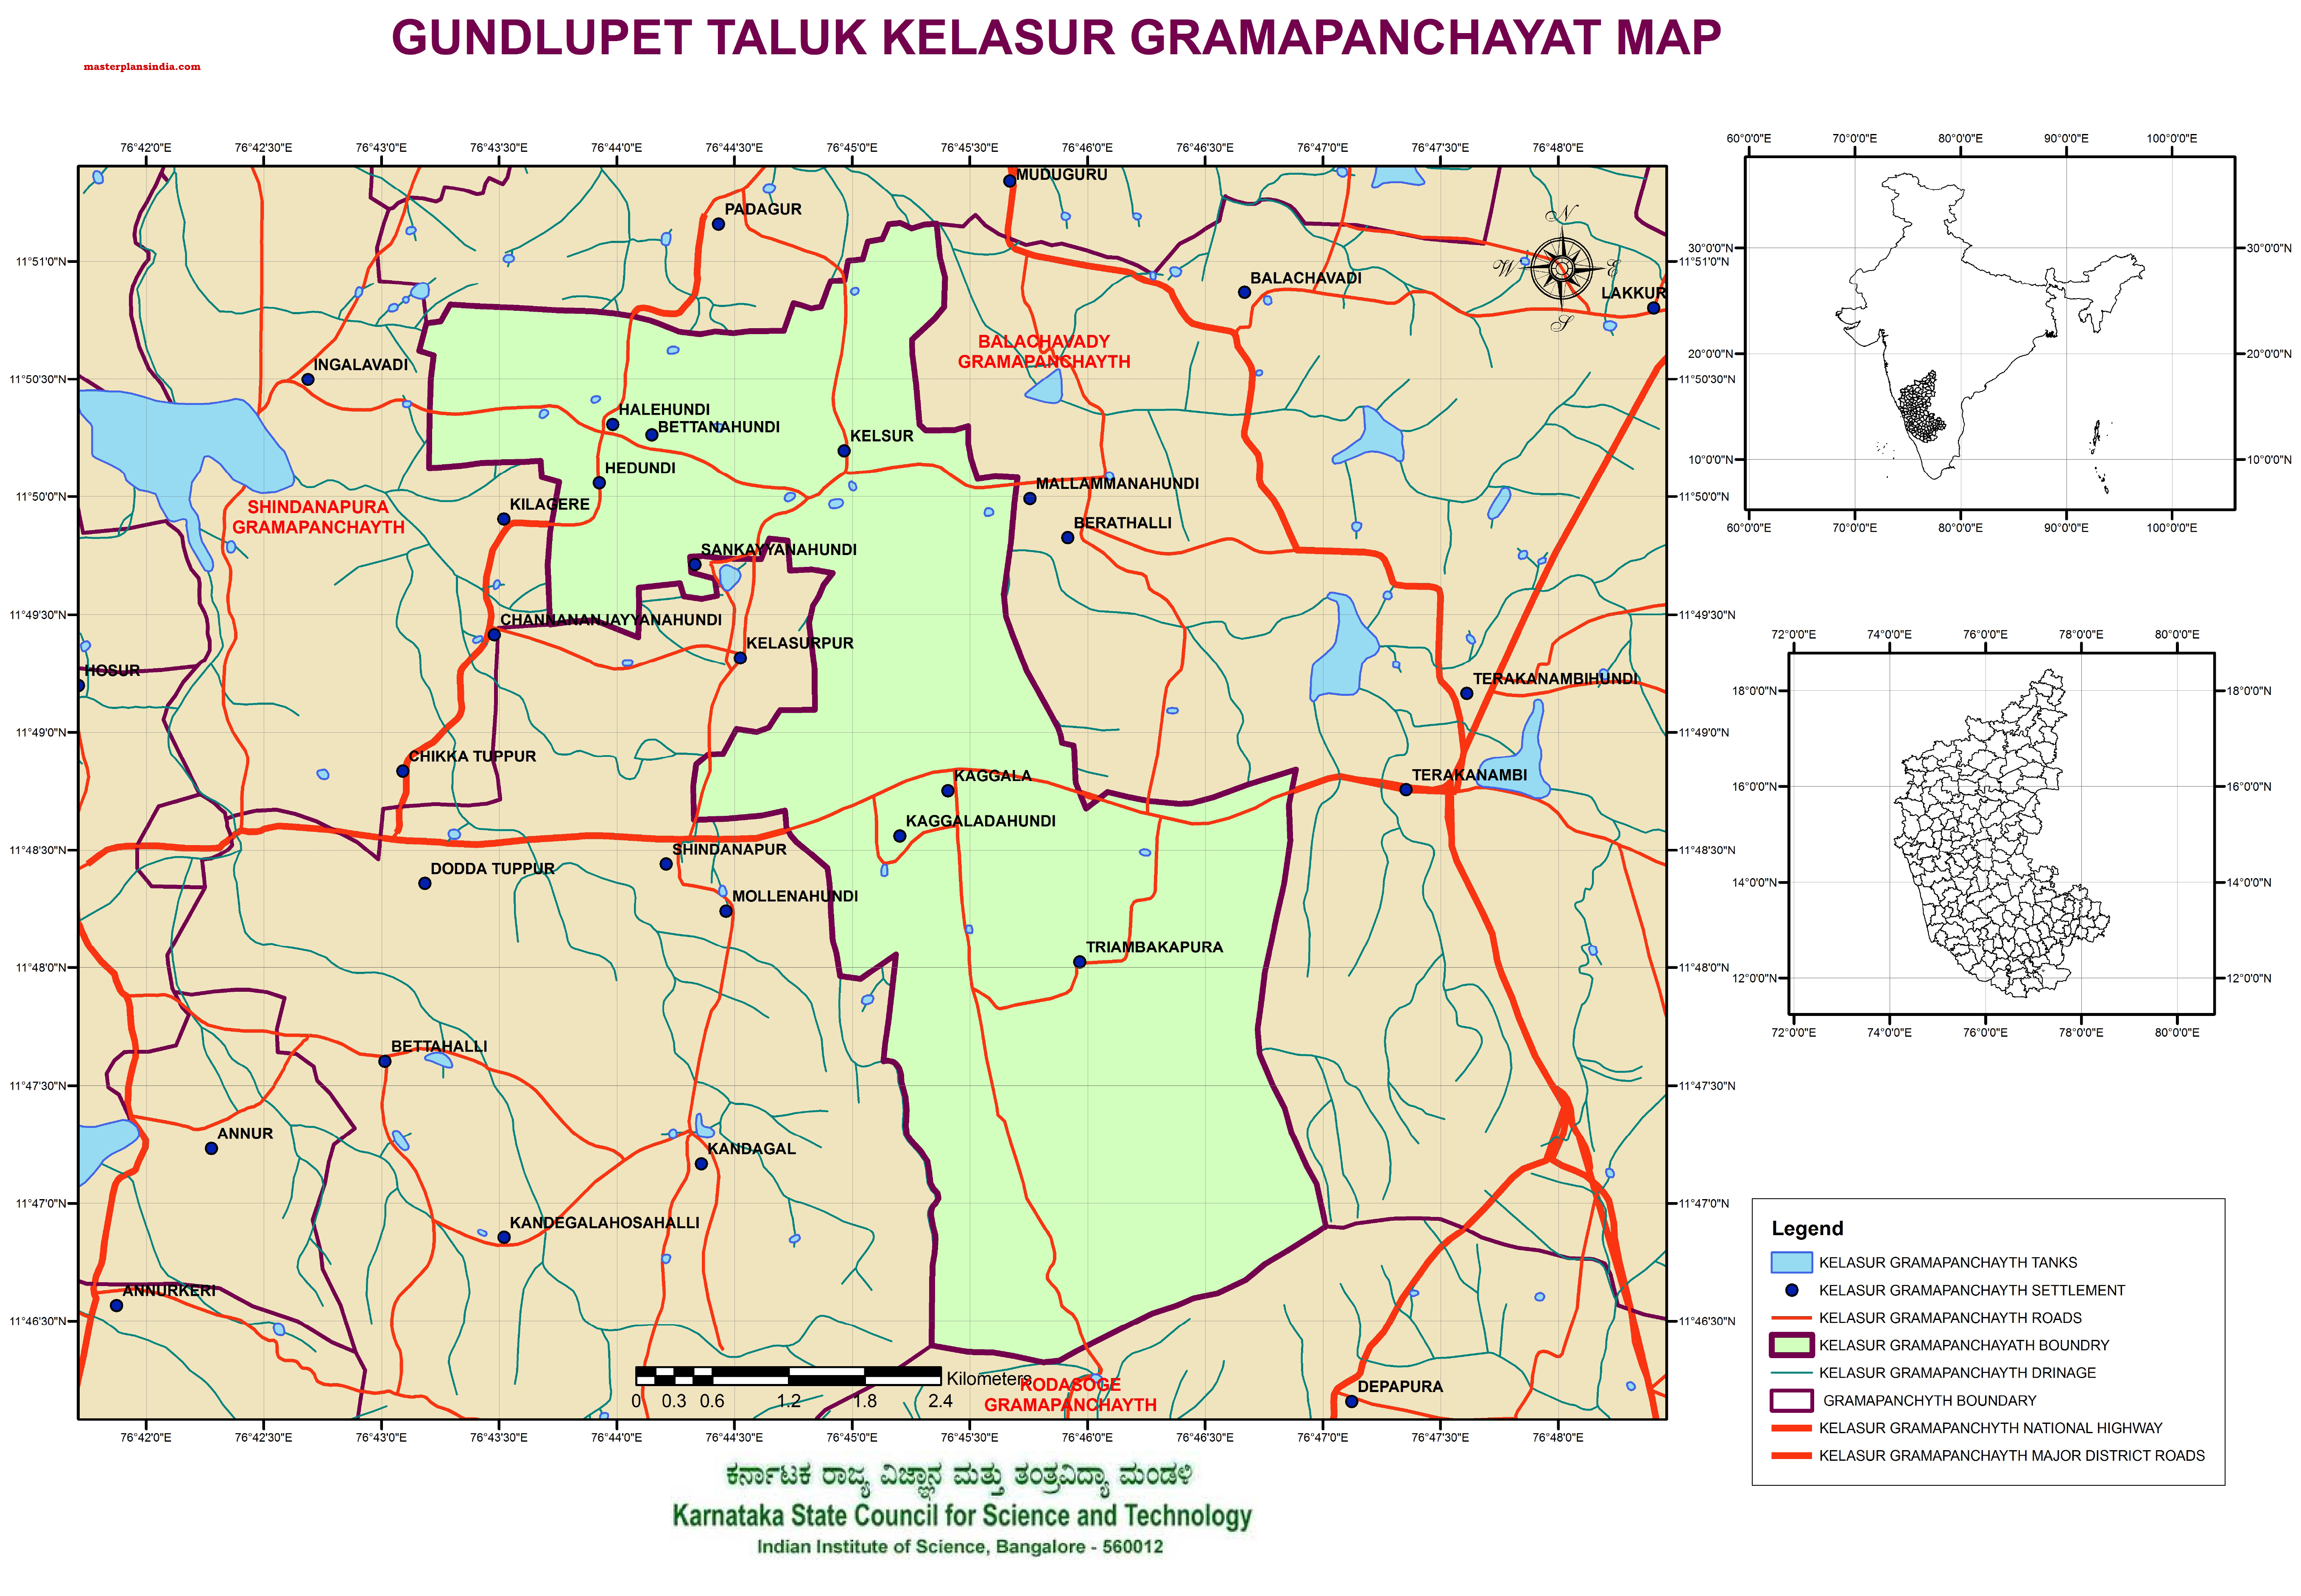 Gundlupet Taluk Village Map Gundlupet Taluk Kelasur Grampanchayath Map - Master Plans India